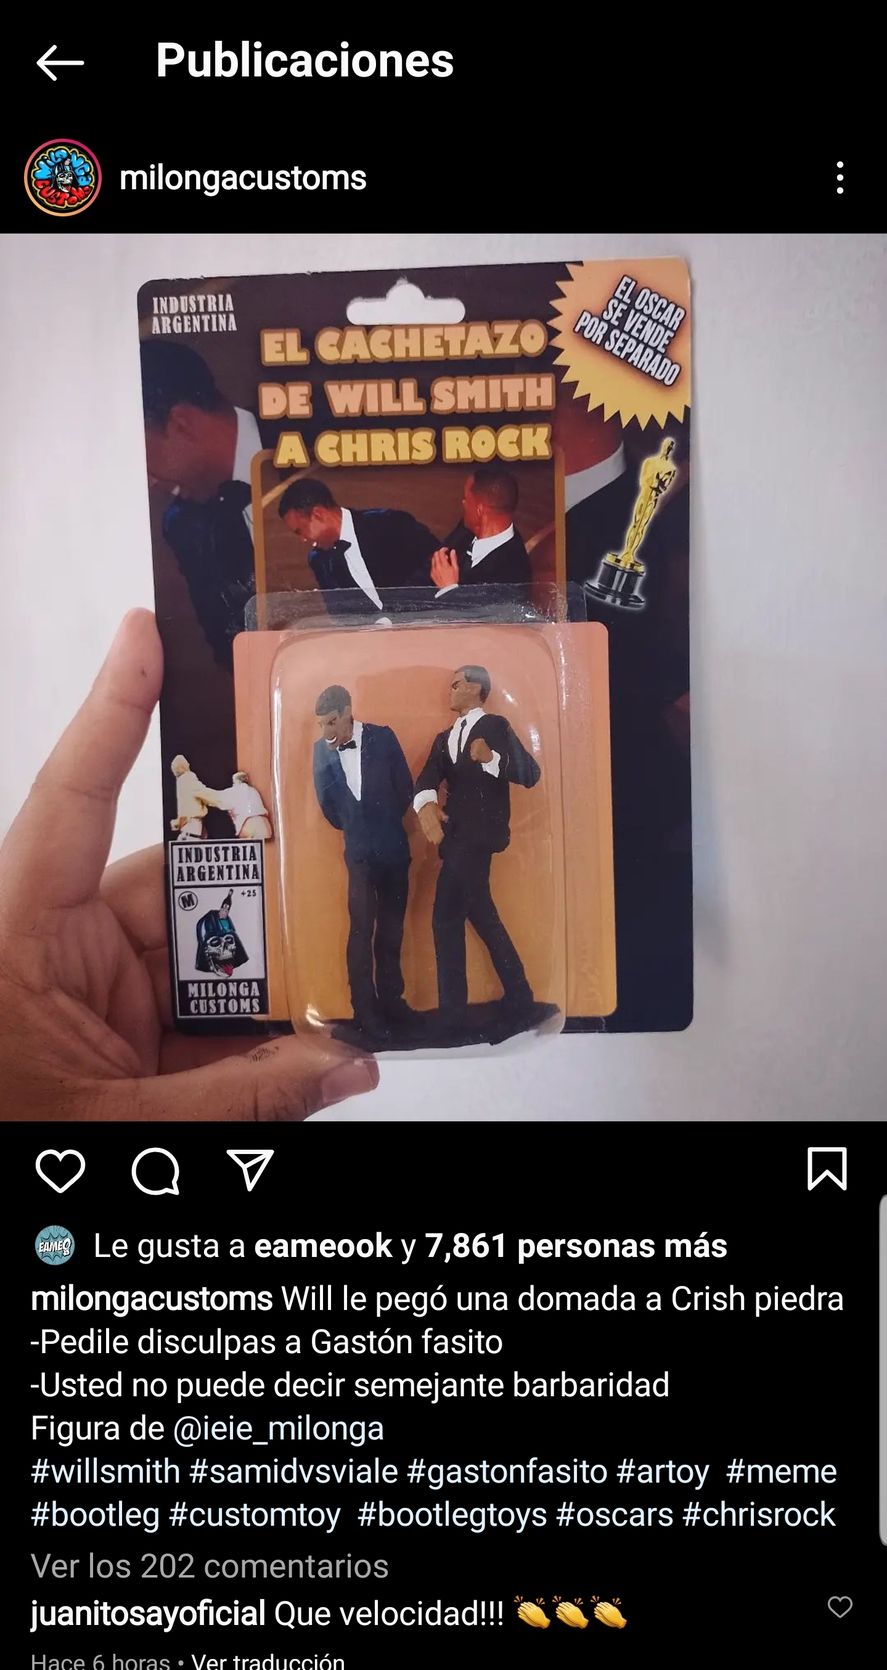 La publicación argentina en Instagram que muestra el muñeco de Will Smith abofeteando al de Chris Rock